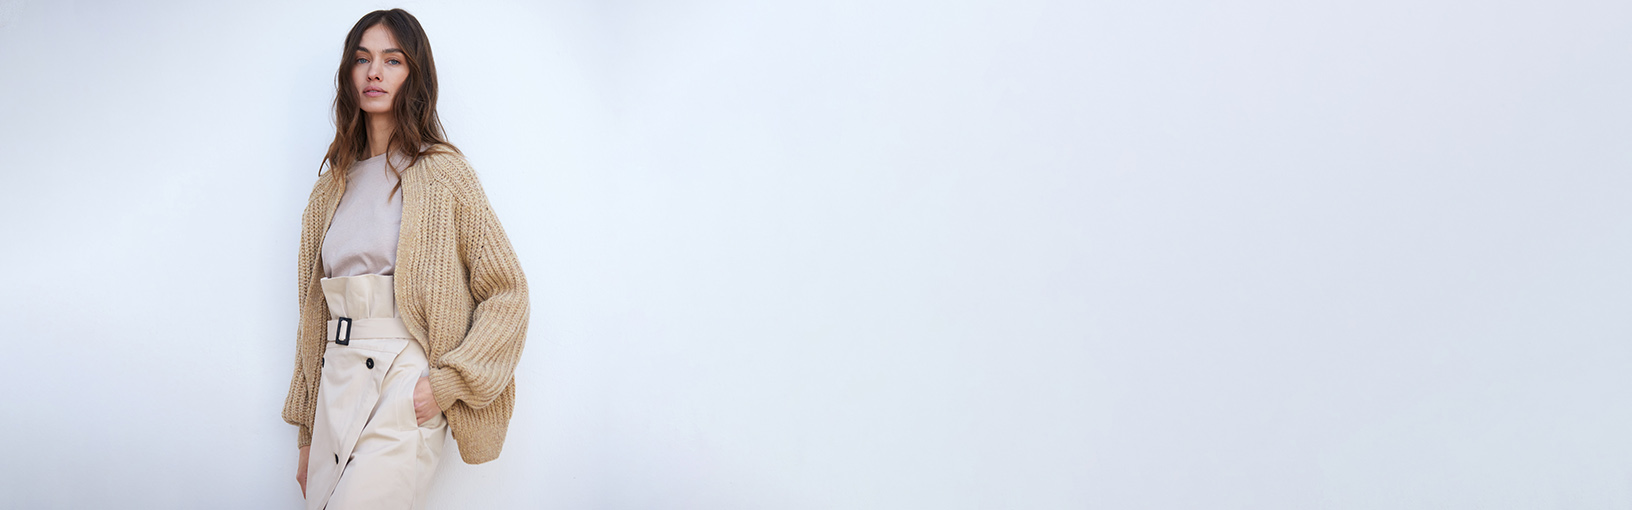 INOVATIVNO, ERGONOMSKO - NAJVIŠI KVALITET Lana Grossa Igle | KUKIČANJE IGLICE | Alu s drvenim drškom dizajna signala drveta